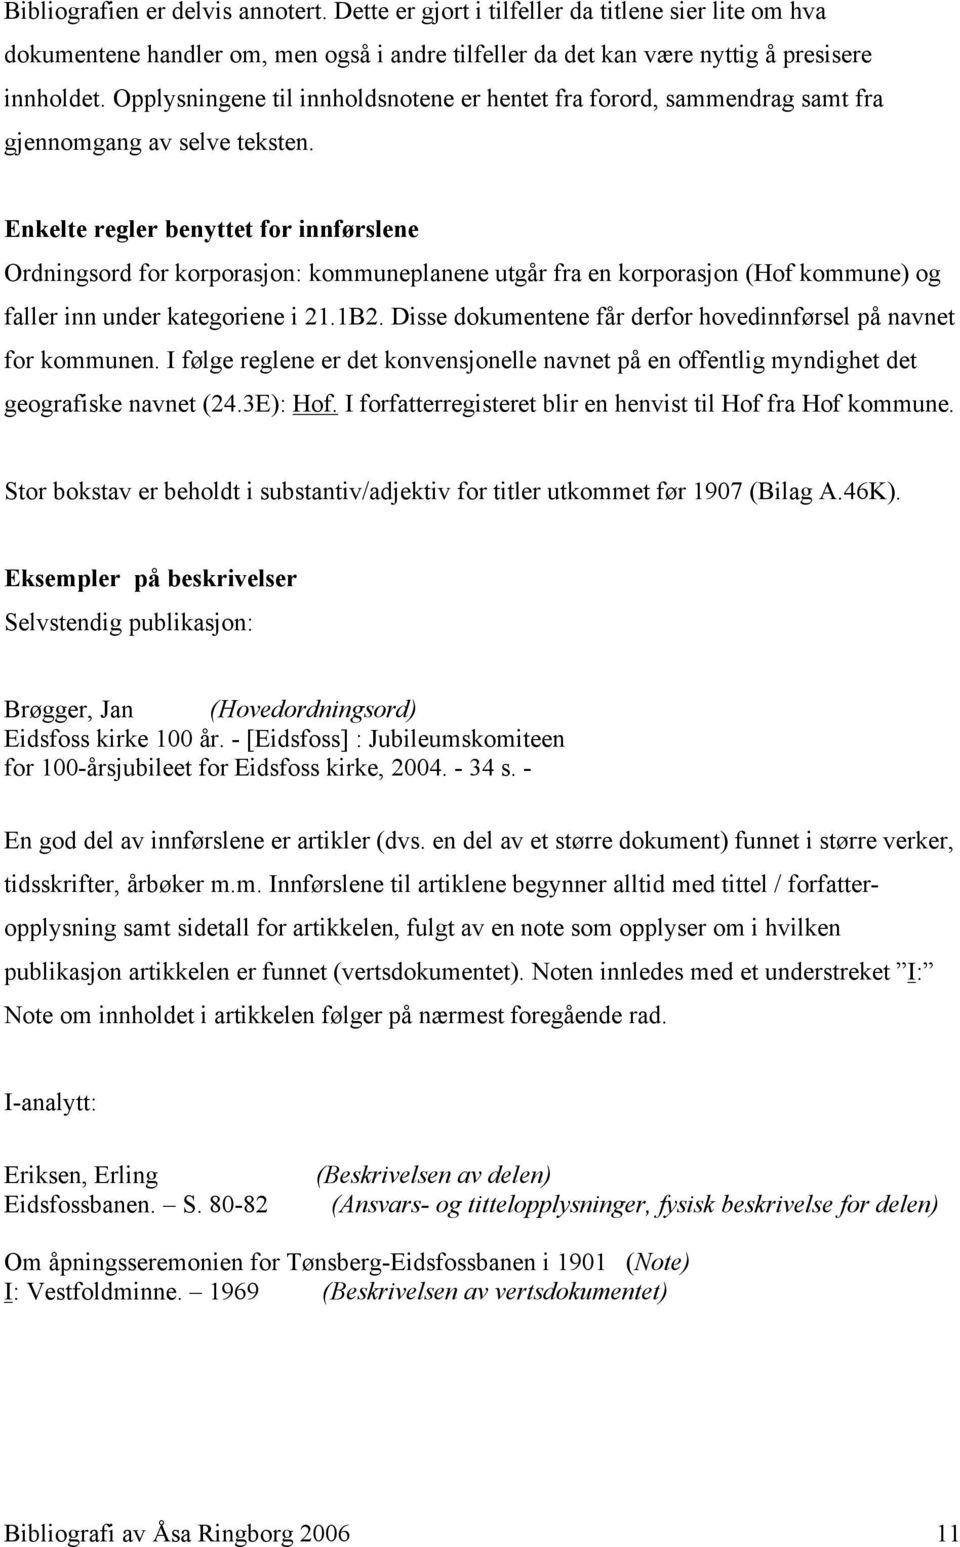 Enkelte regler benyttet for innførslene Ordningsord for korporasjon: kommuneplanene utgår fra en korporasjon (Hof kommune) og faller inn under kategoriene i 21.1B2.